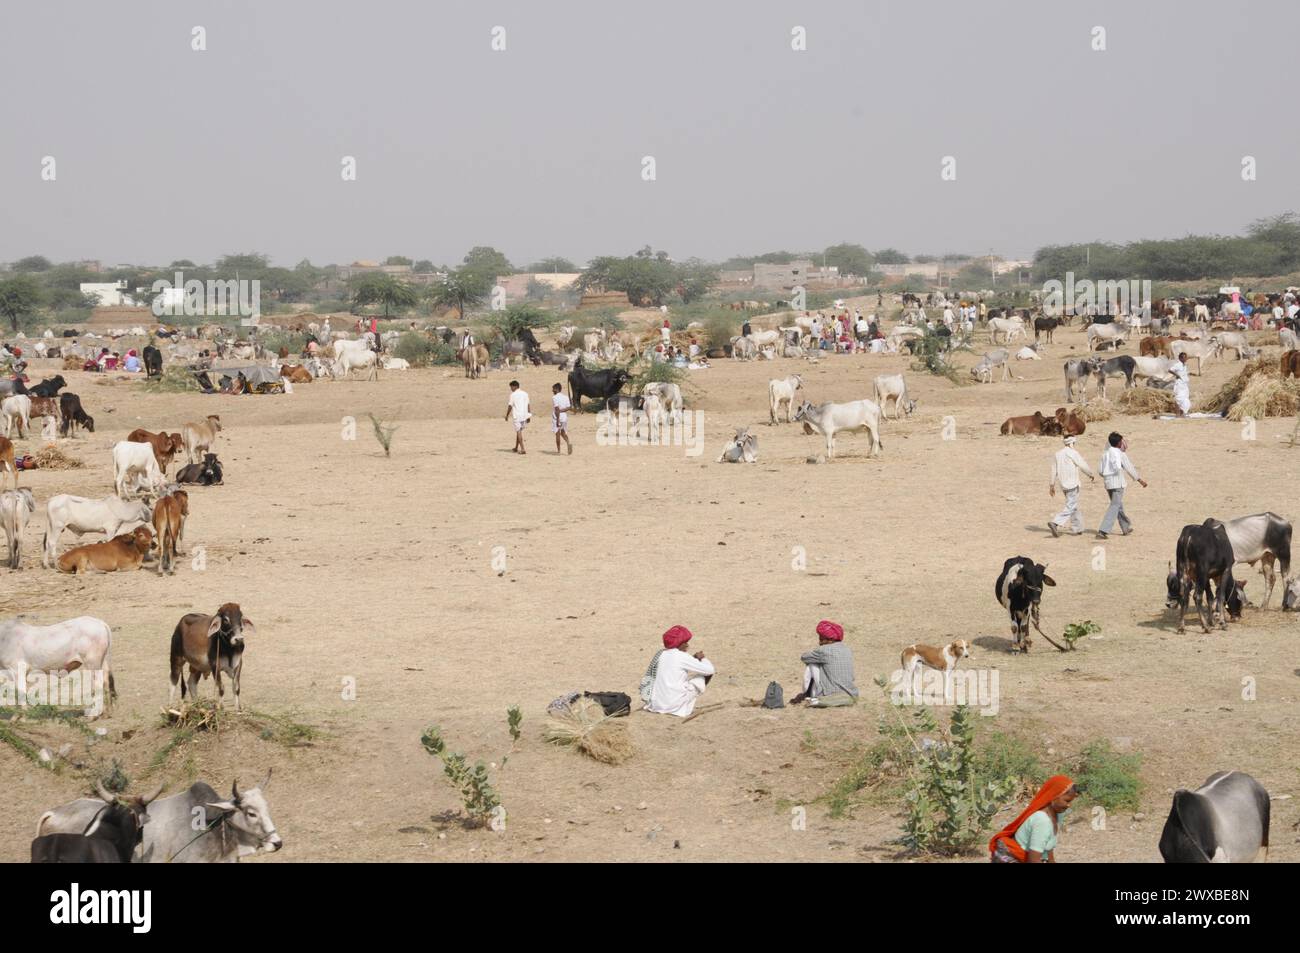 Marché de chameau, foire, gens, marché de mariage, animaux, ville désertique de Pushkar, (Pushkar Camal Fair), vue sur un marché de bétail animé avec des gens et divers Banque D'Images